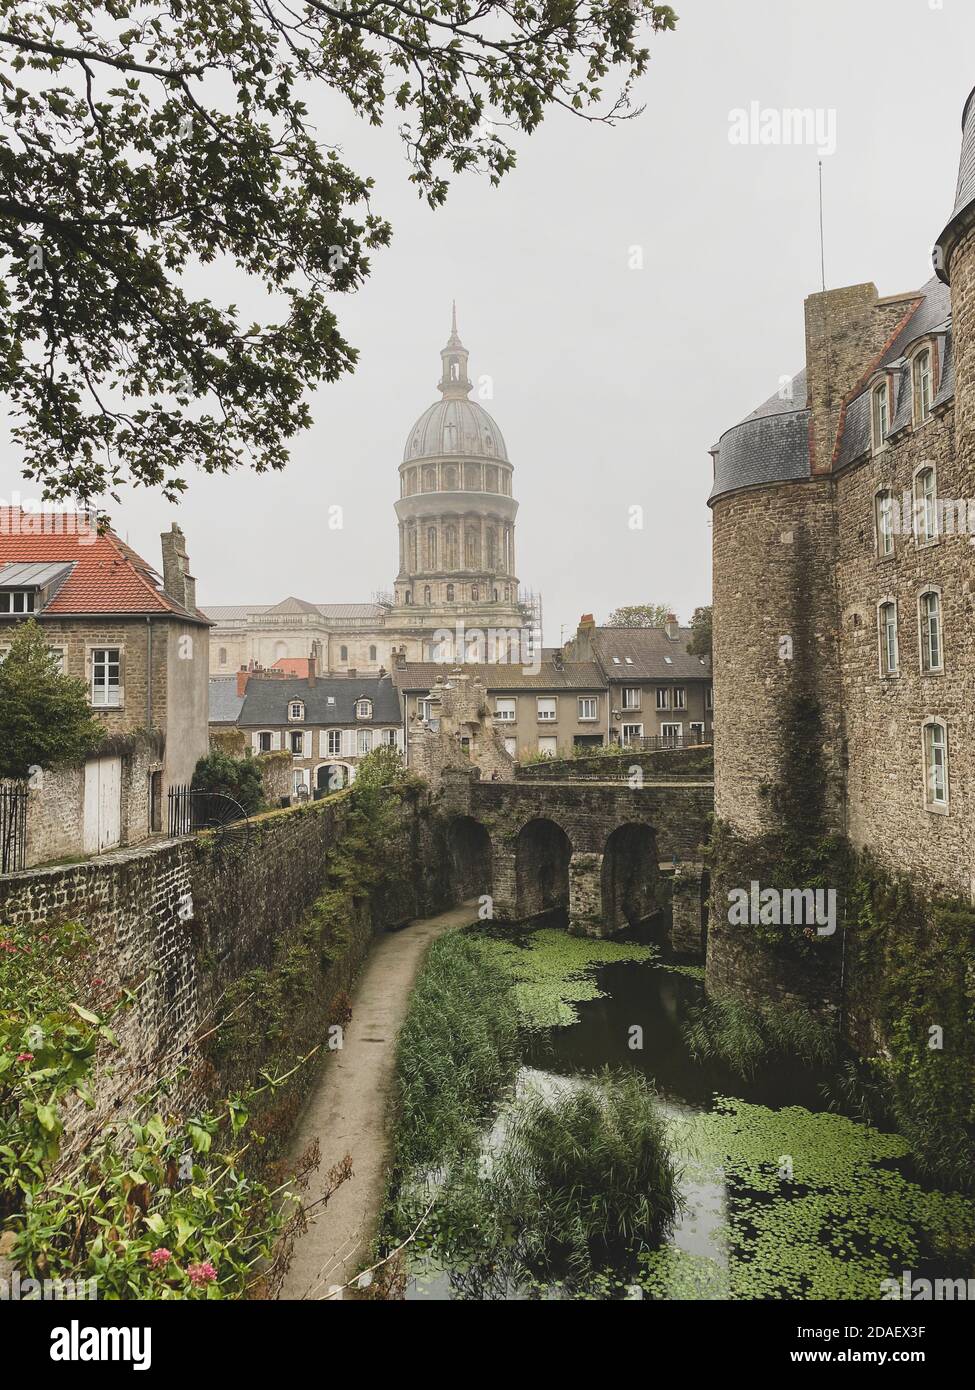 Basilique notre-Dame de l'Immaculée conception à la ville fortifiée de Boulogne-sur-Mer, château en premier plan. Nuageux et pluvieux jour sans engagement Banque D'Images